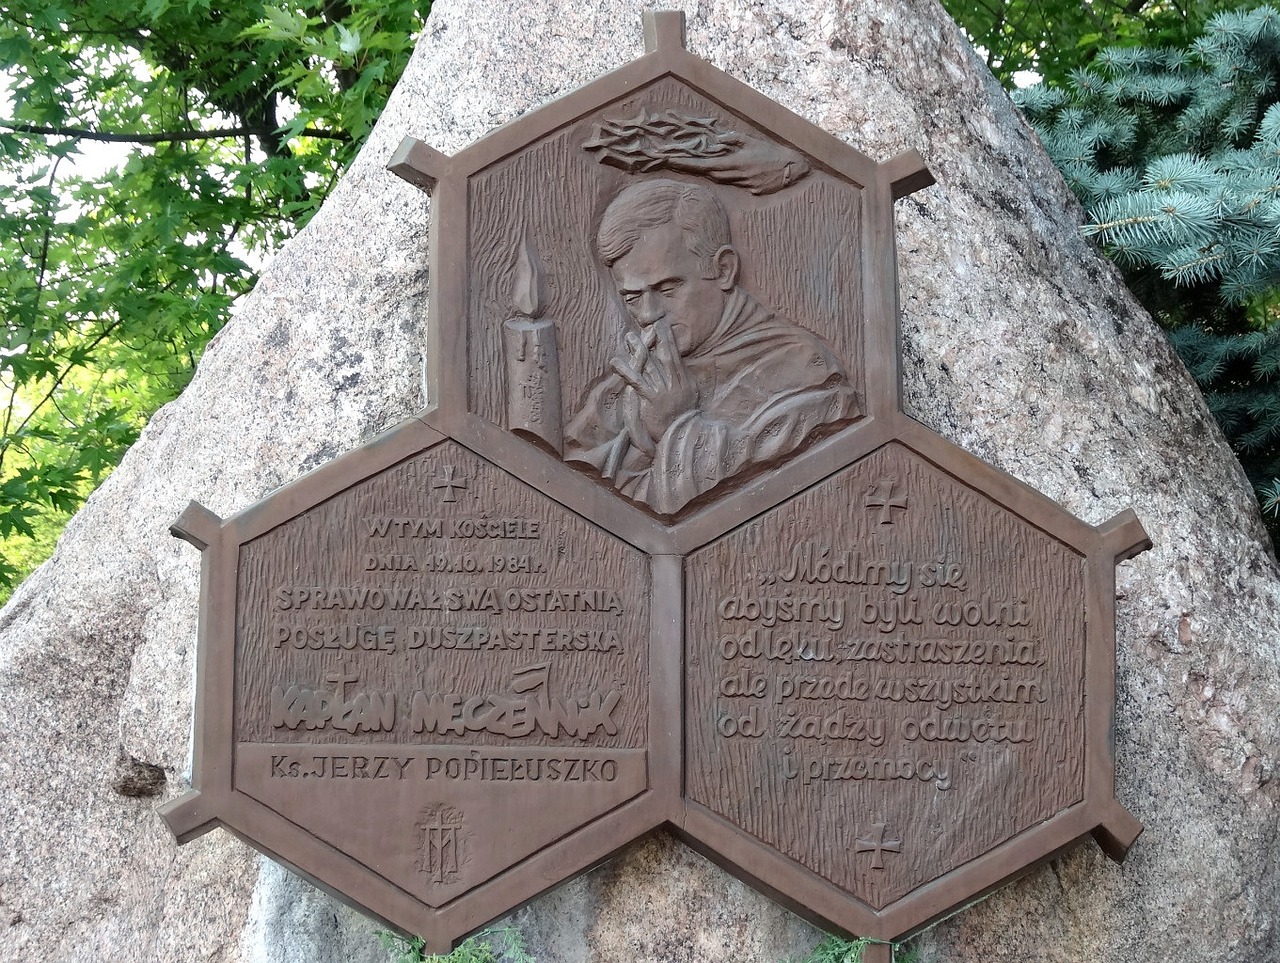 jerzy popiełuszko monument plaque free photo